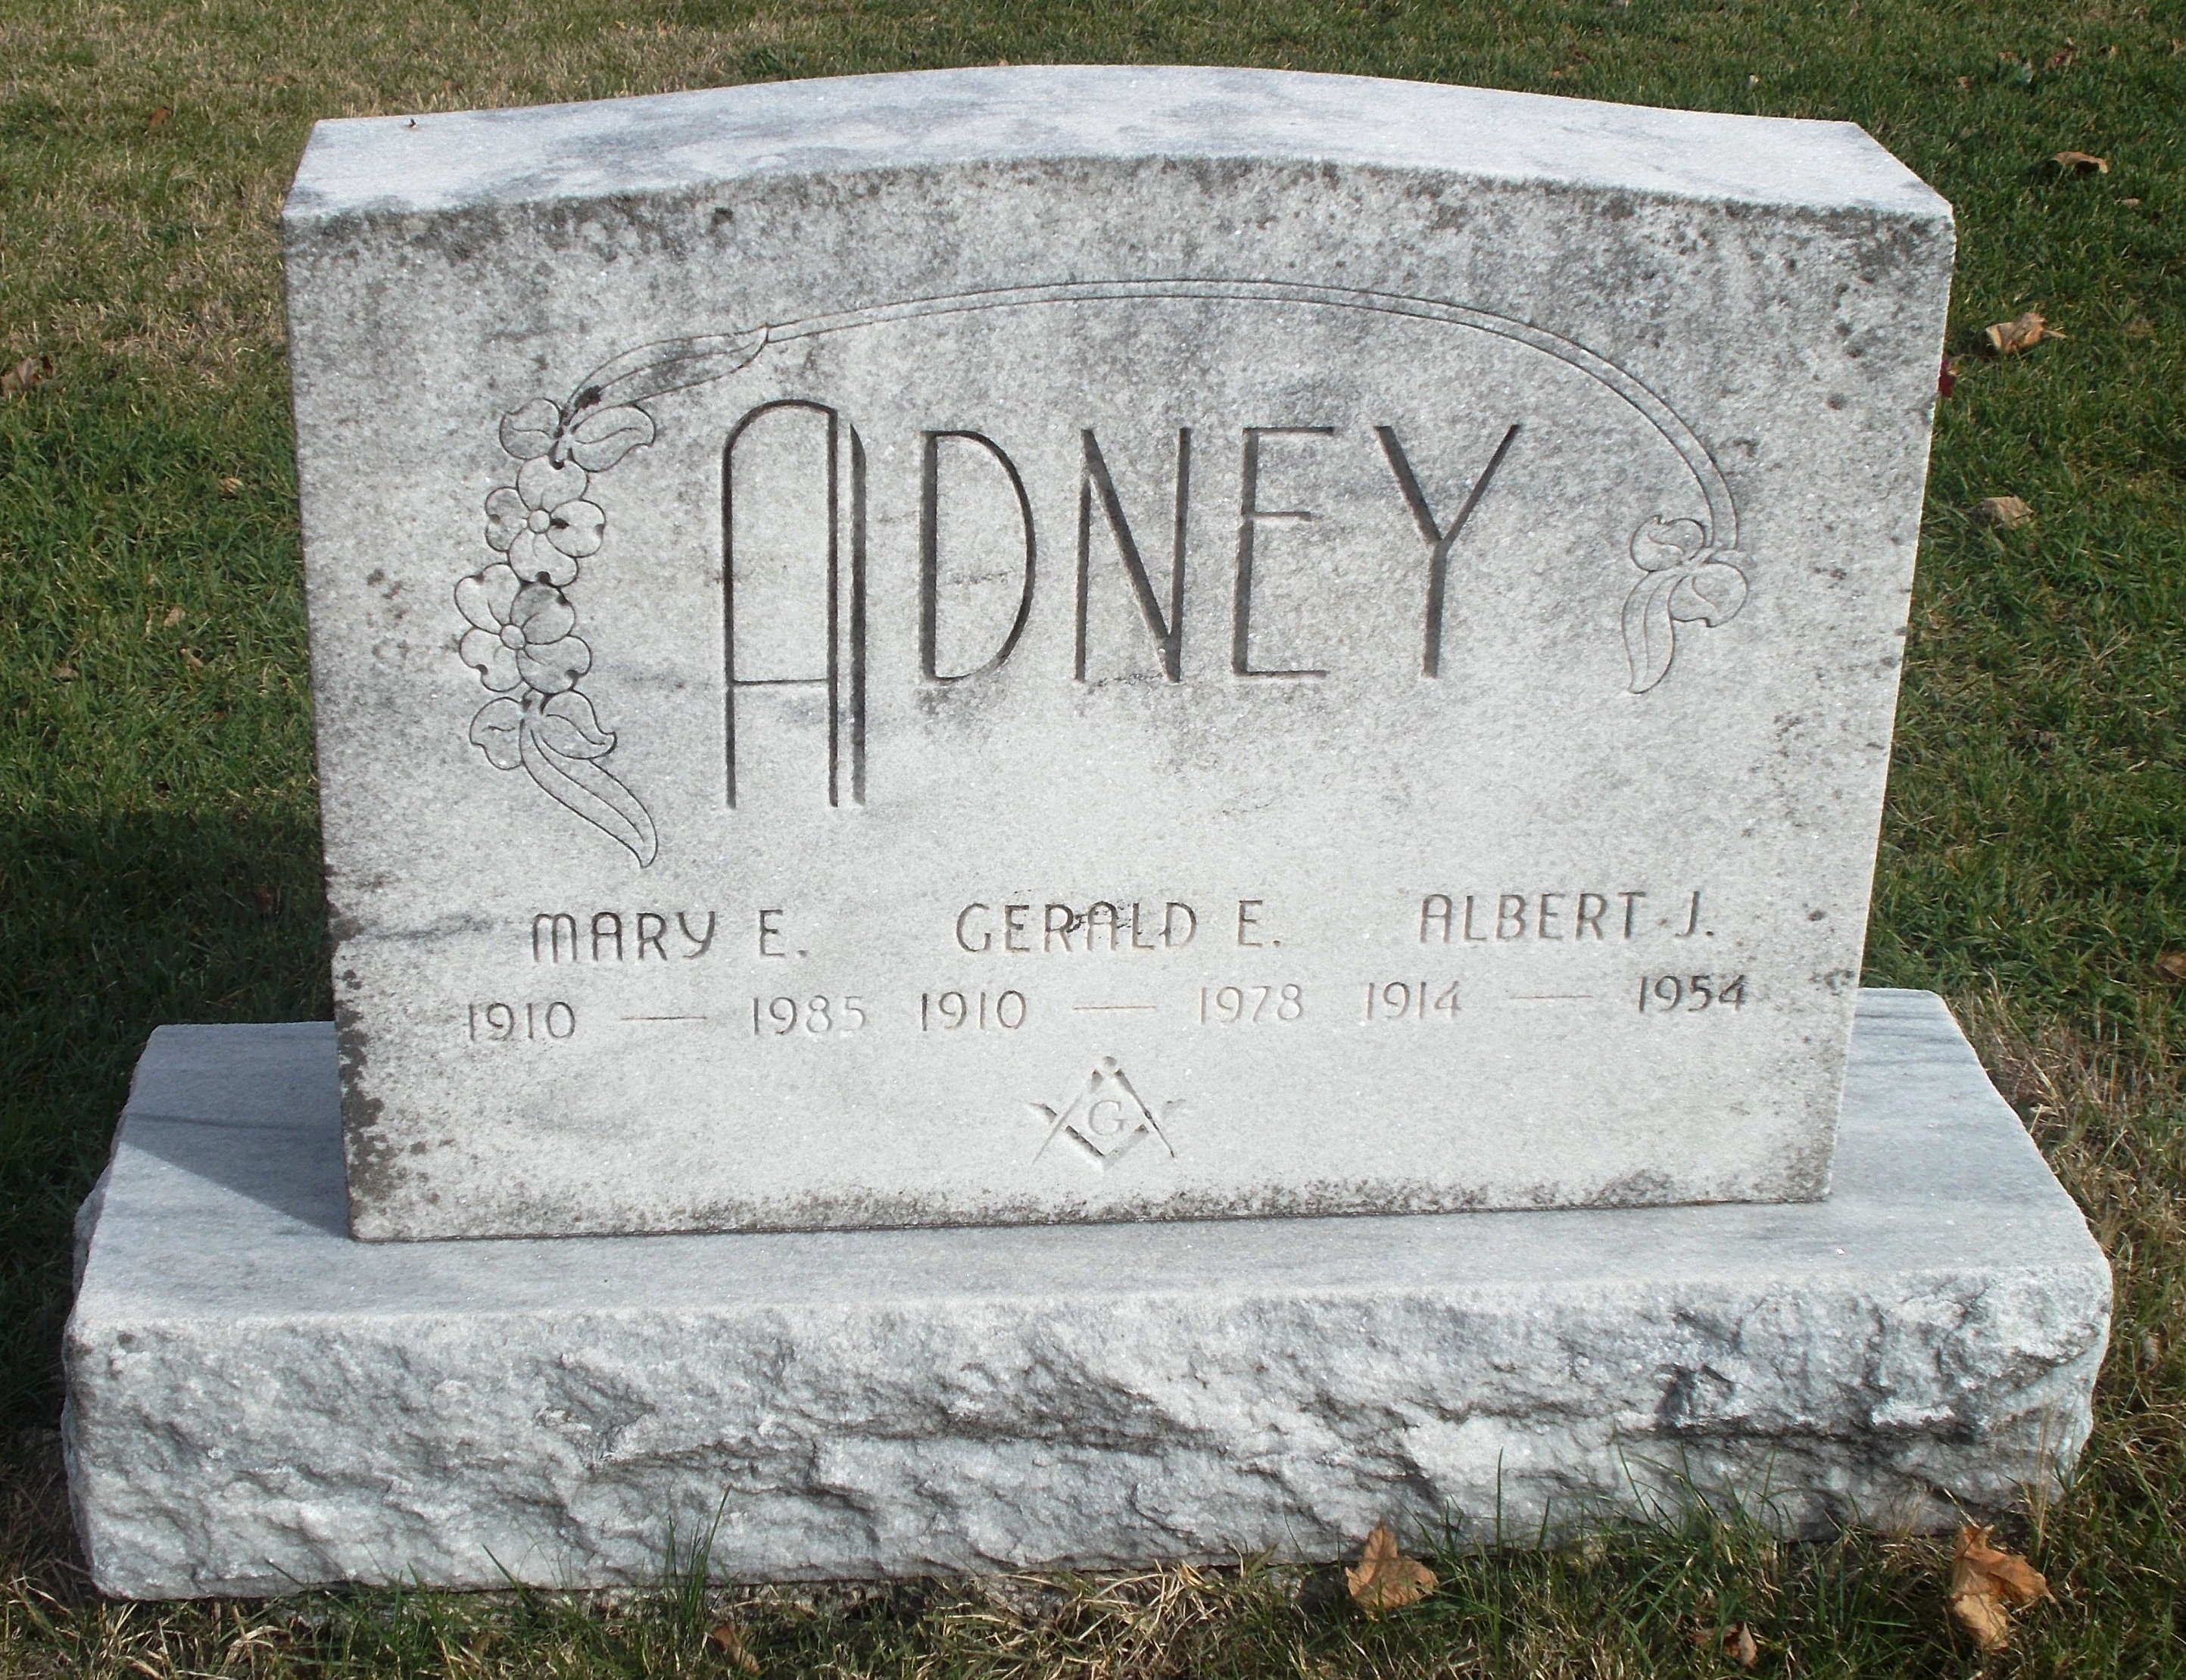 Gerald E Adney